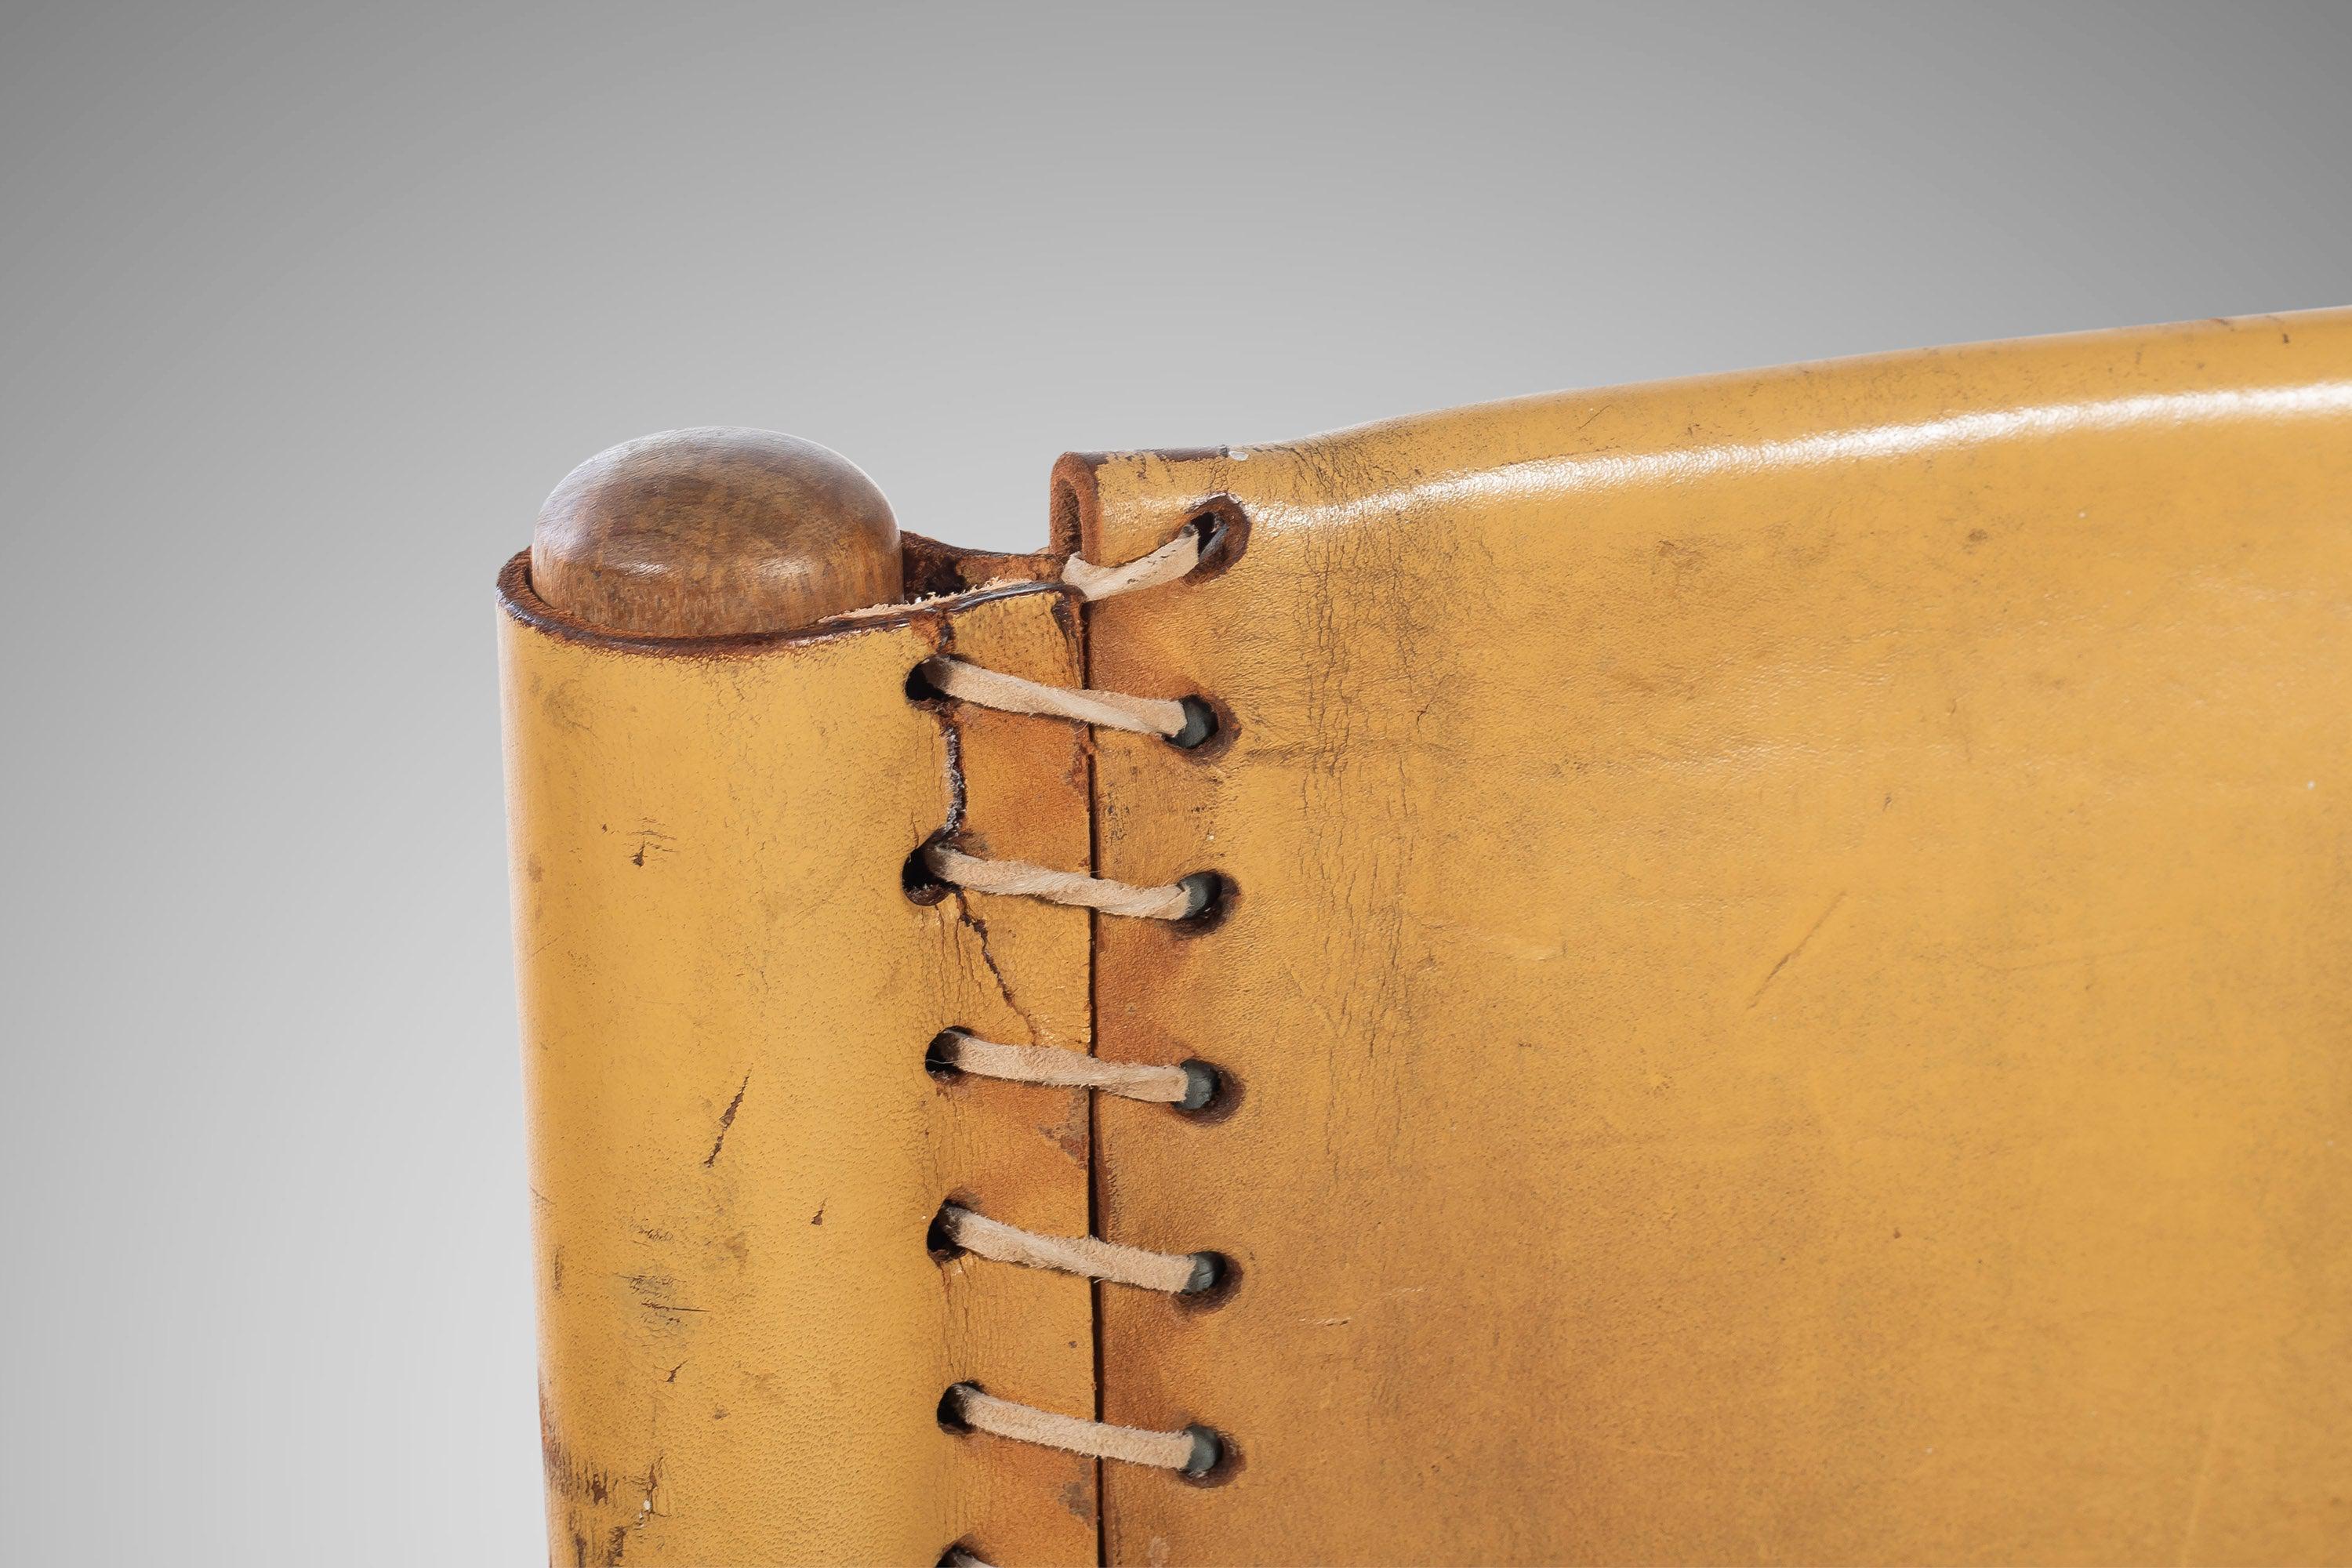 Originaler kolumbianischer Stuhl aus gegerbtem Sattelleder und ofengetrocknetem Teak- und weißem Walnussholz aus den 1960er Jahren, entworfen von Beirmann Werner für die Firma Arte Sano. Diese exquisiten Stühle, die auch als Safari-, Lodge- oder